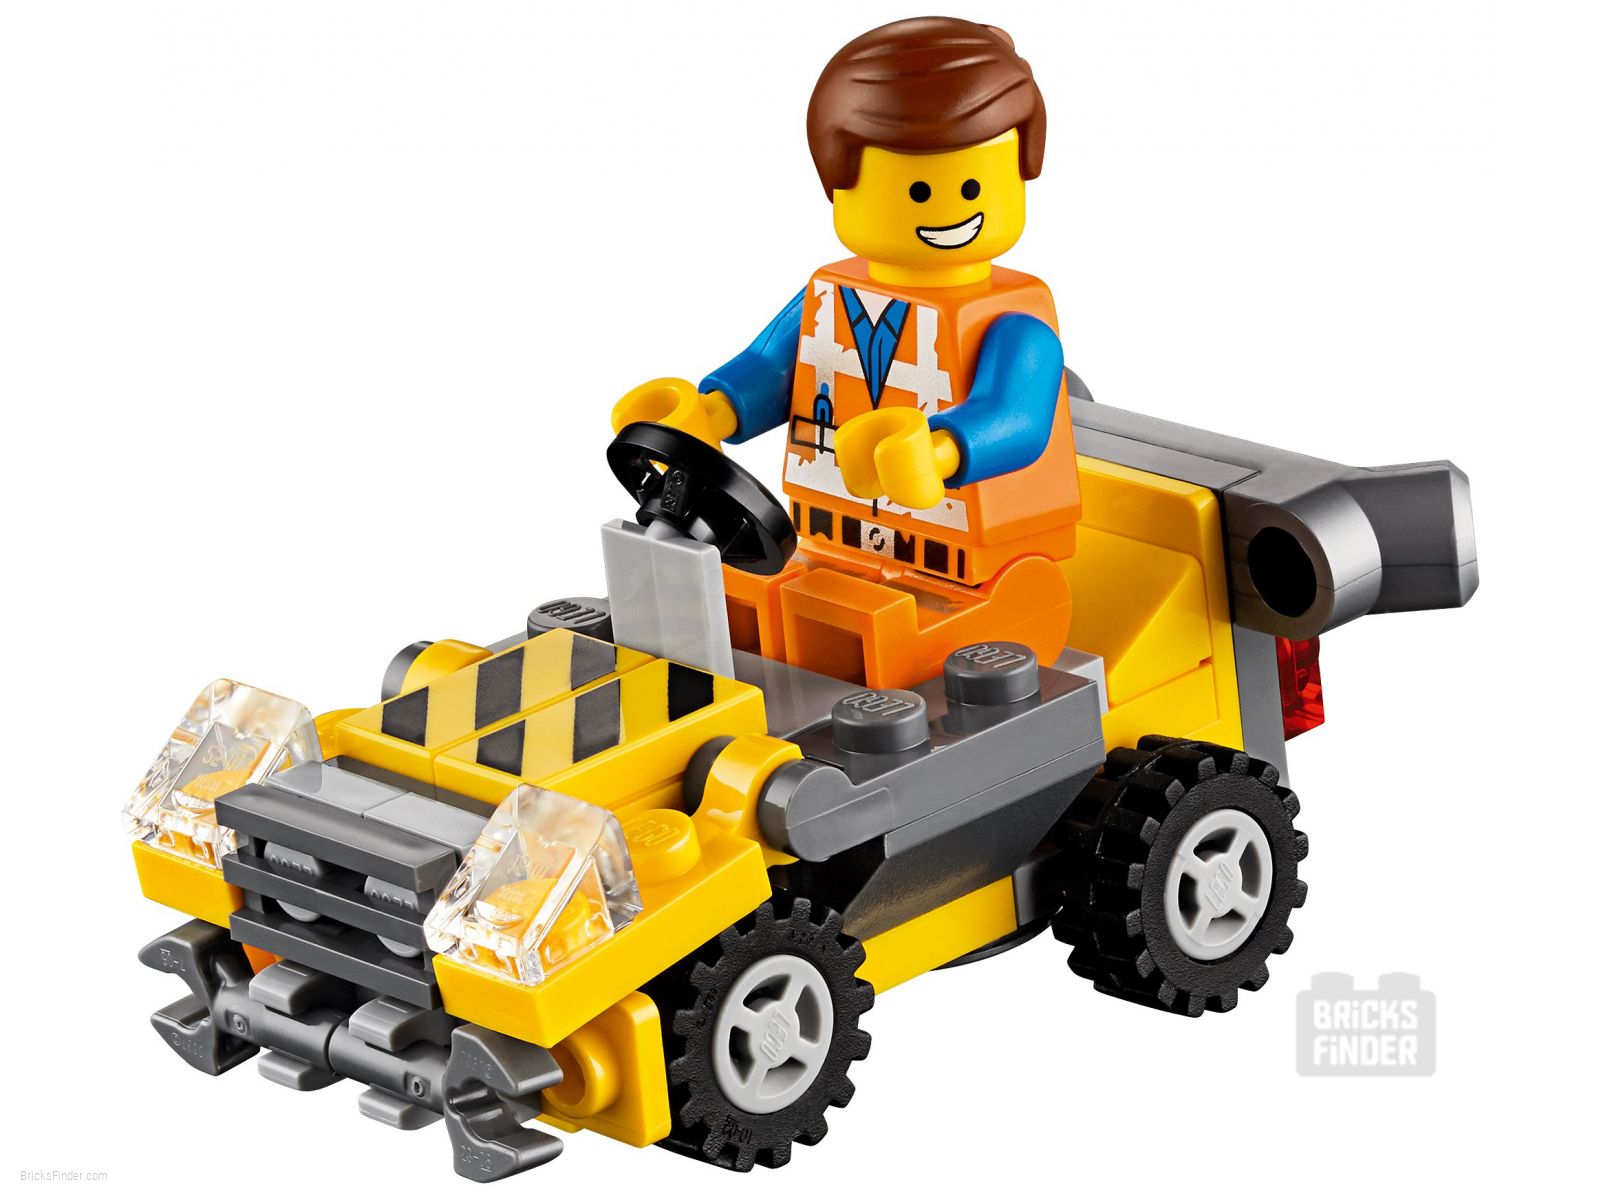 Videnskab Nat skelet LEGO 30529 Mini Master-Building Emmet (Polybag) (Lego Movie) |  BricksFinder.com - Best LEGO Deals & Discounts